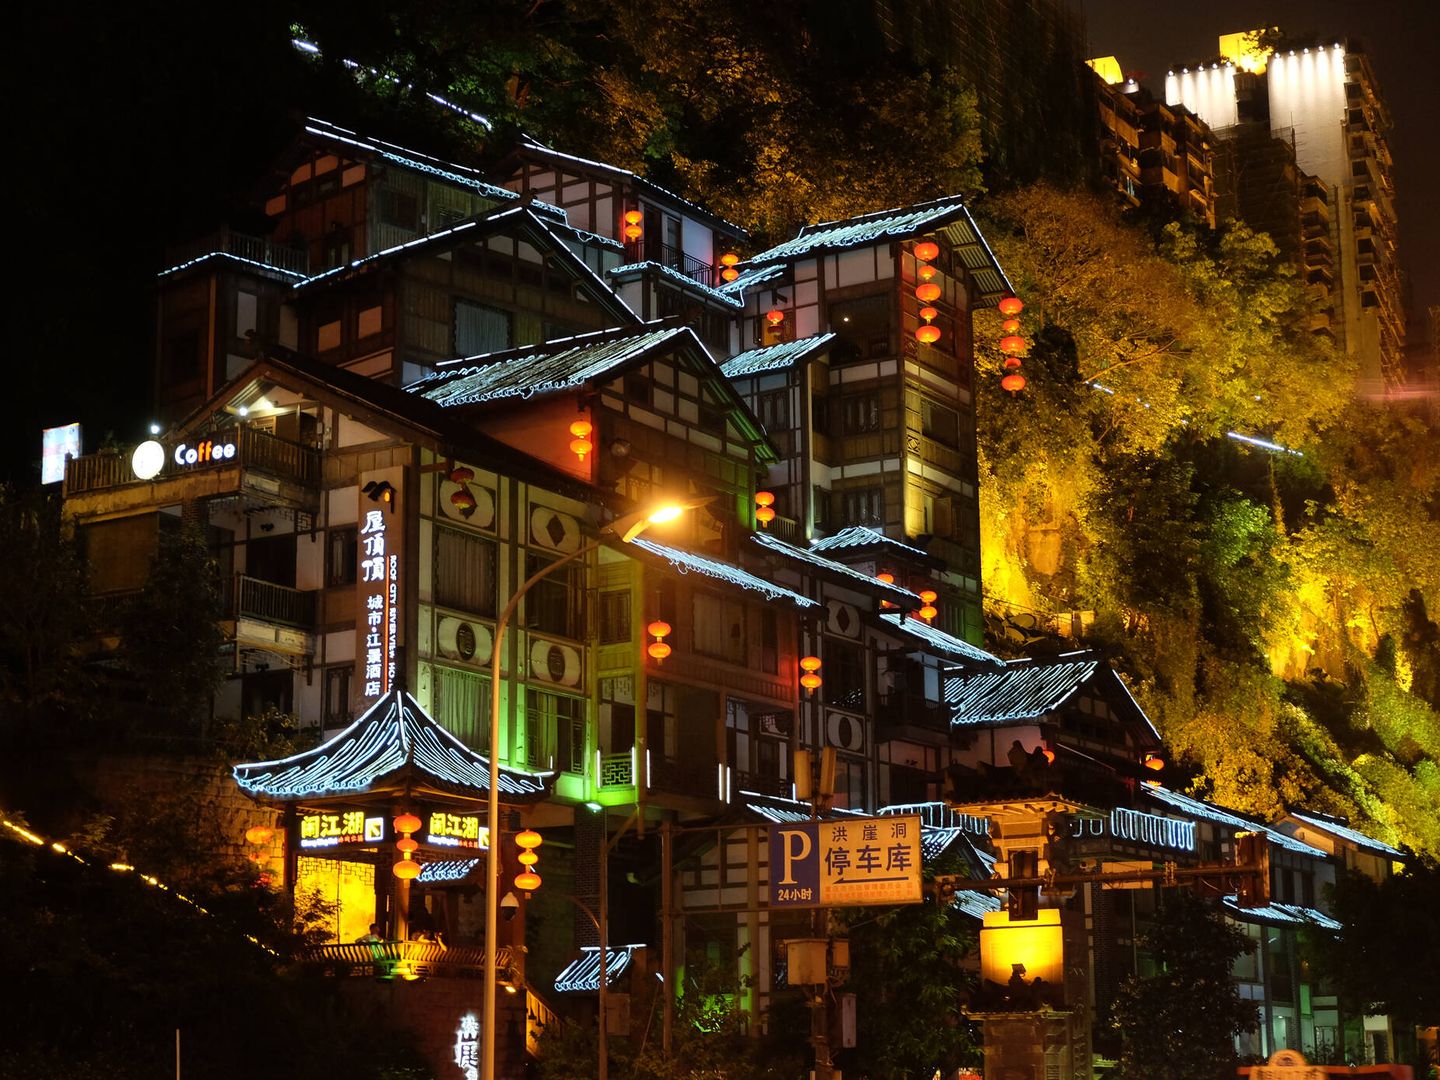 Edificios antiguos de Hong Ya Dong en Chongqing, China, los cuales parecen haber salido de la película de Miyazaki. (iStock)